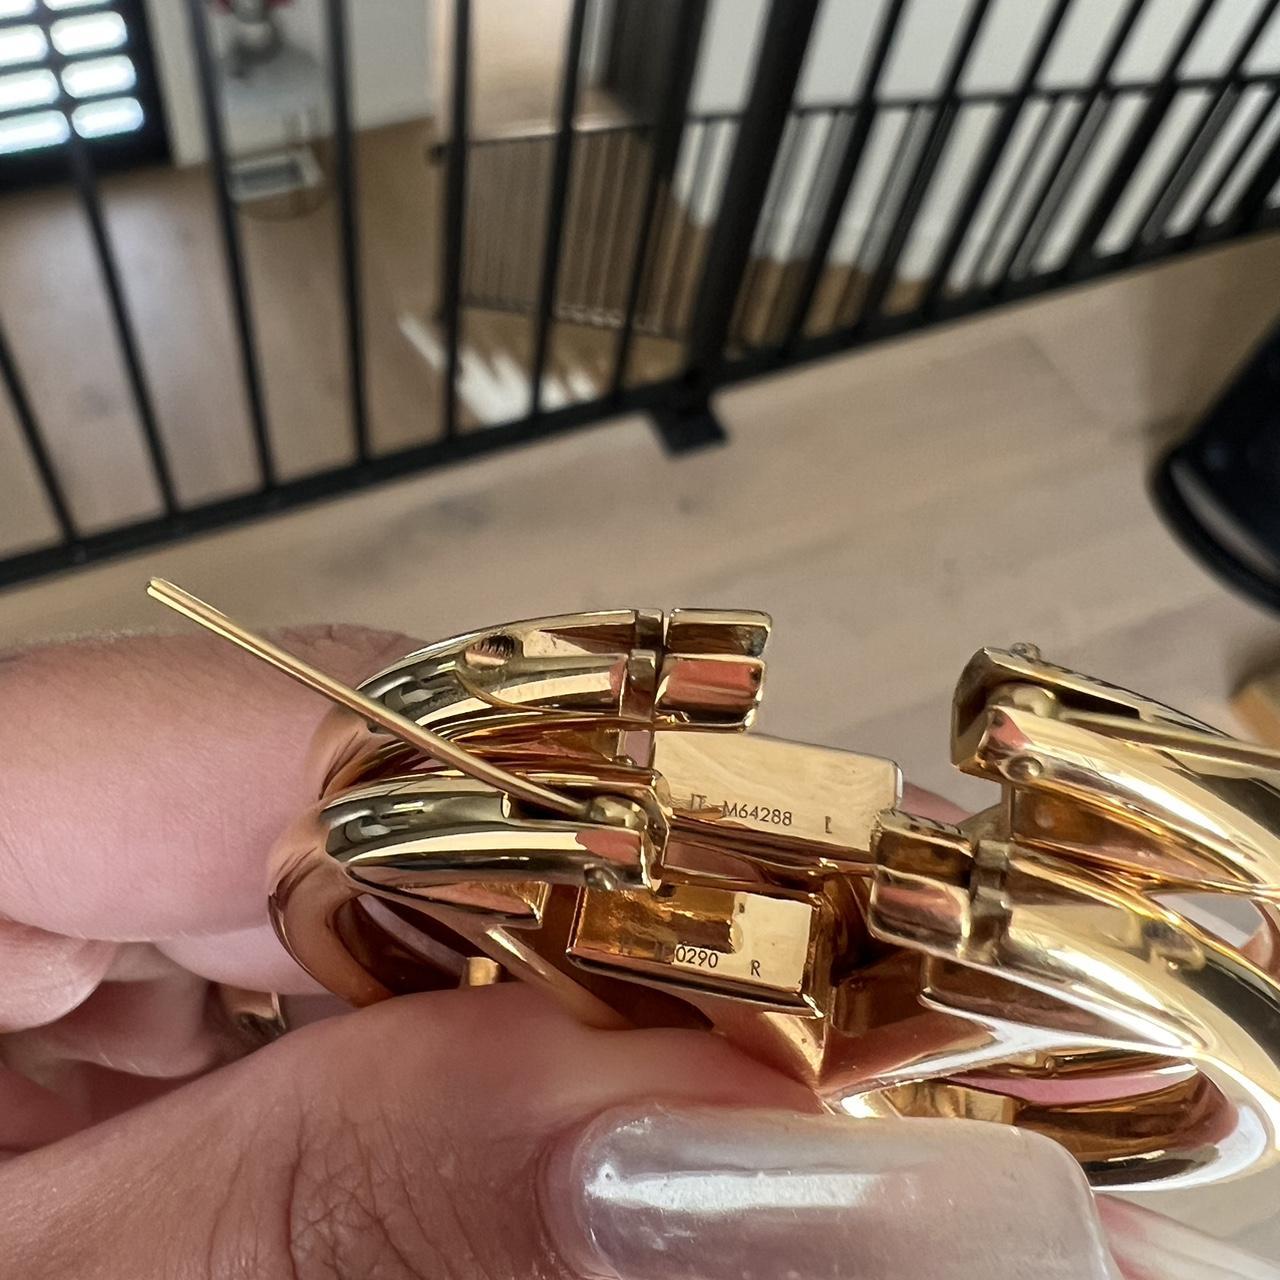 Louis Vuitton Gold Hoop Earrings. Will consider all - Depop